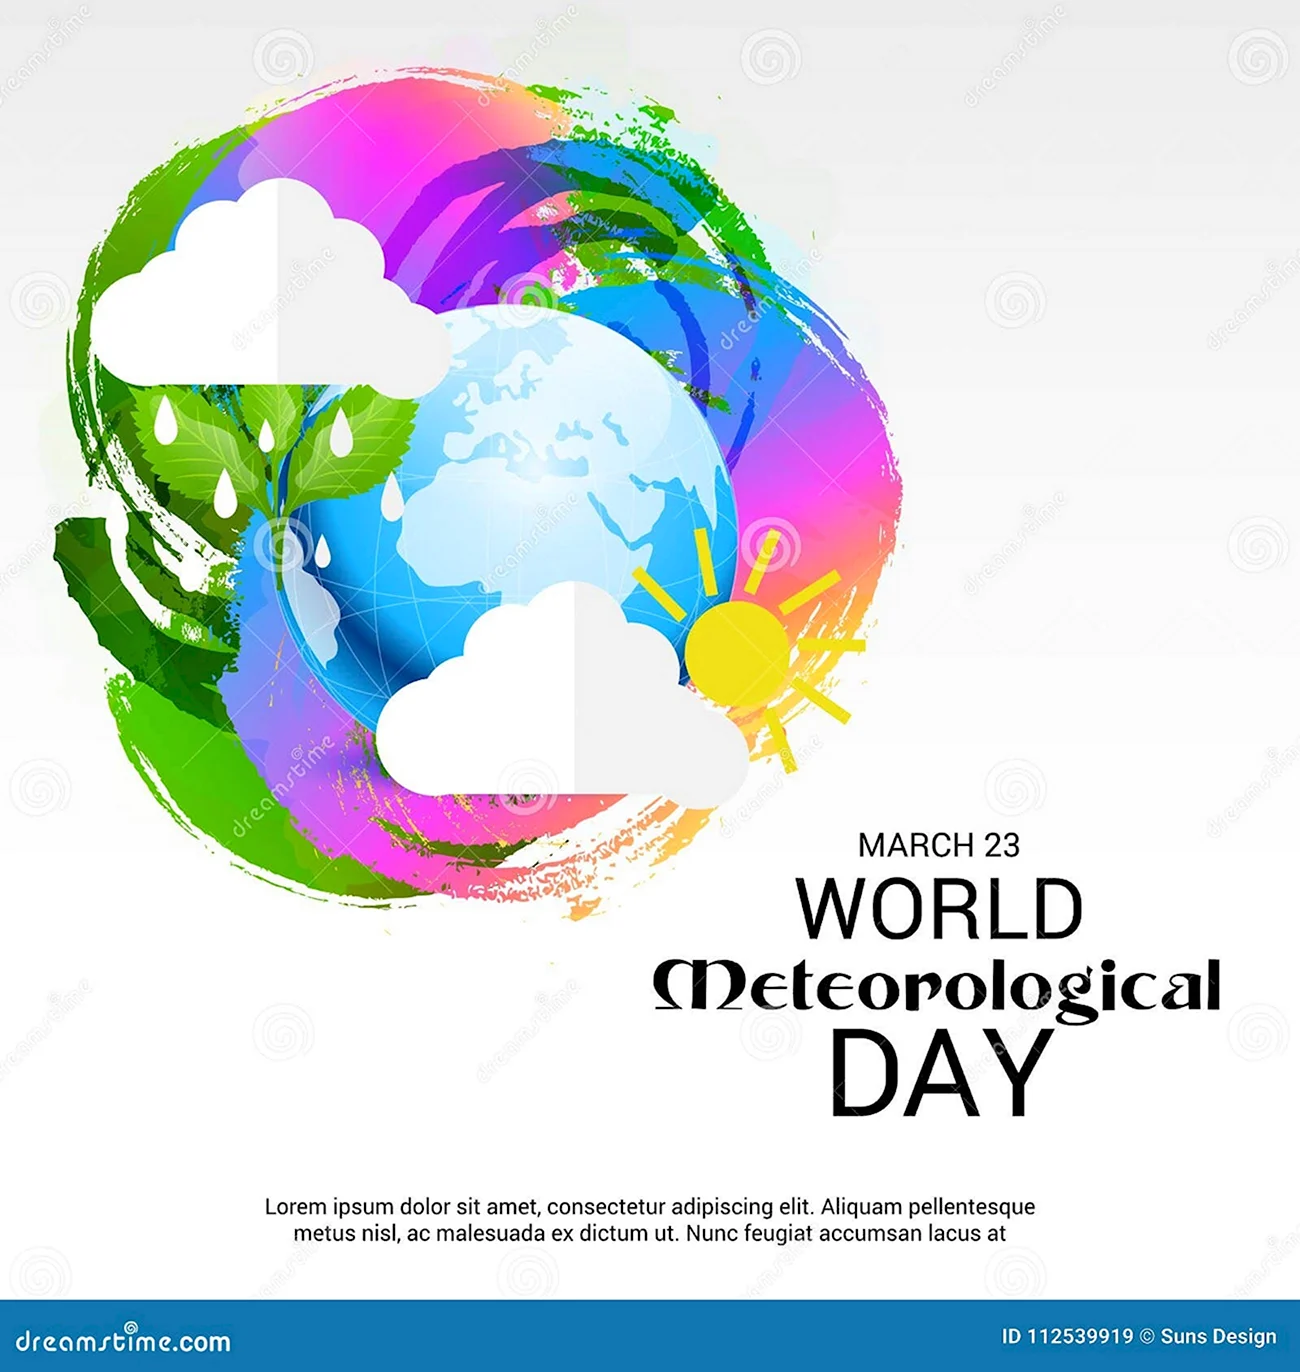 Всемирный день метеоролога World Meteorological Day. Поздравление